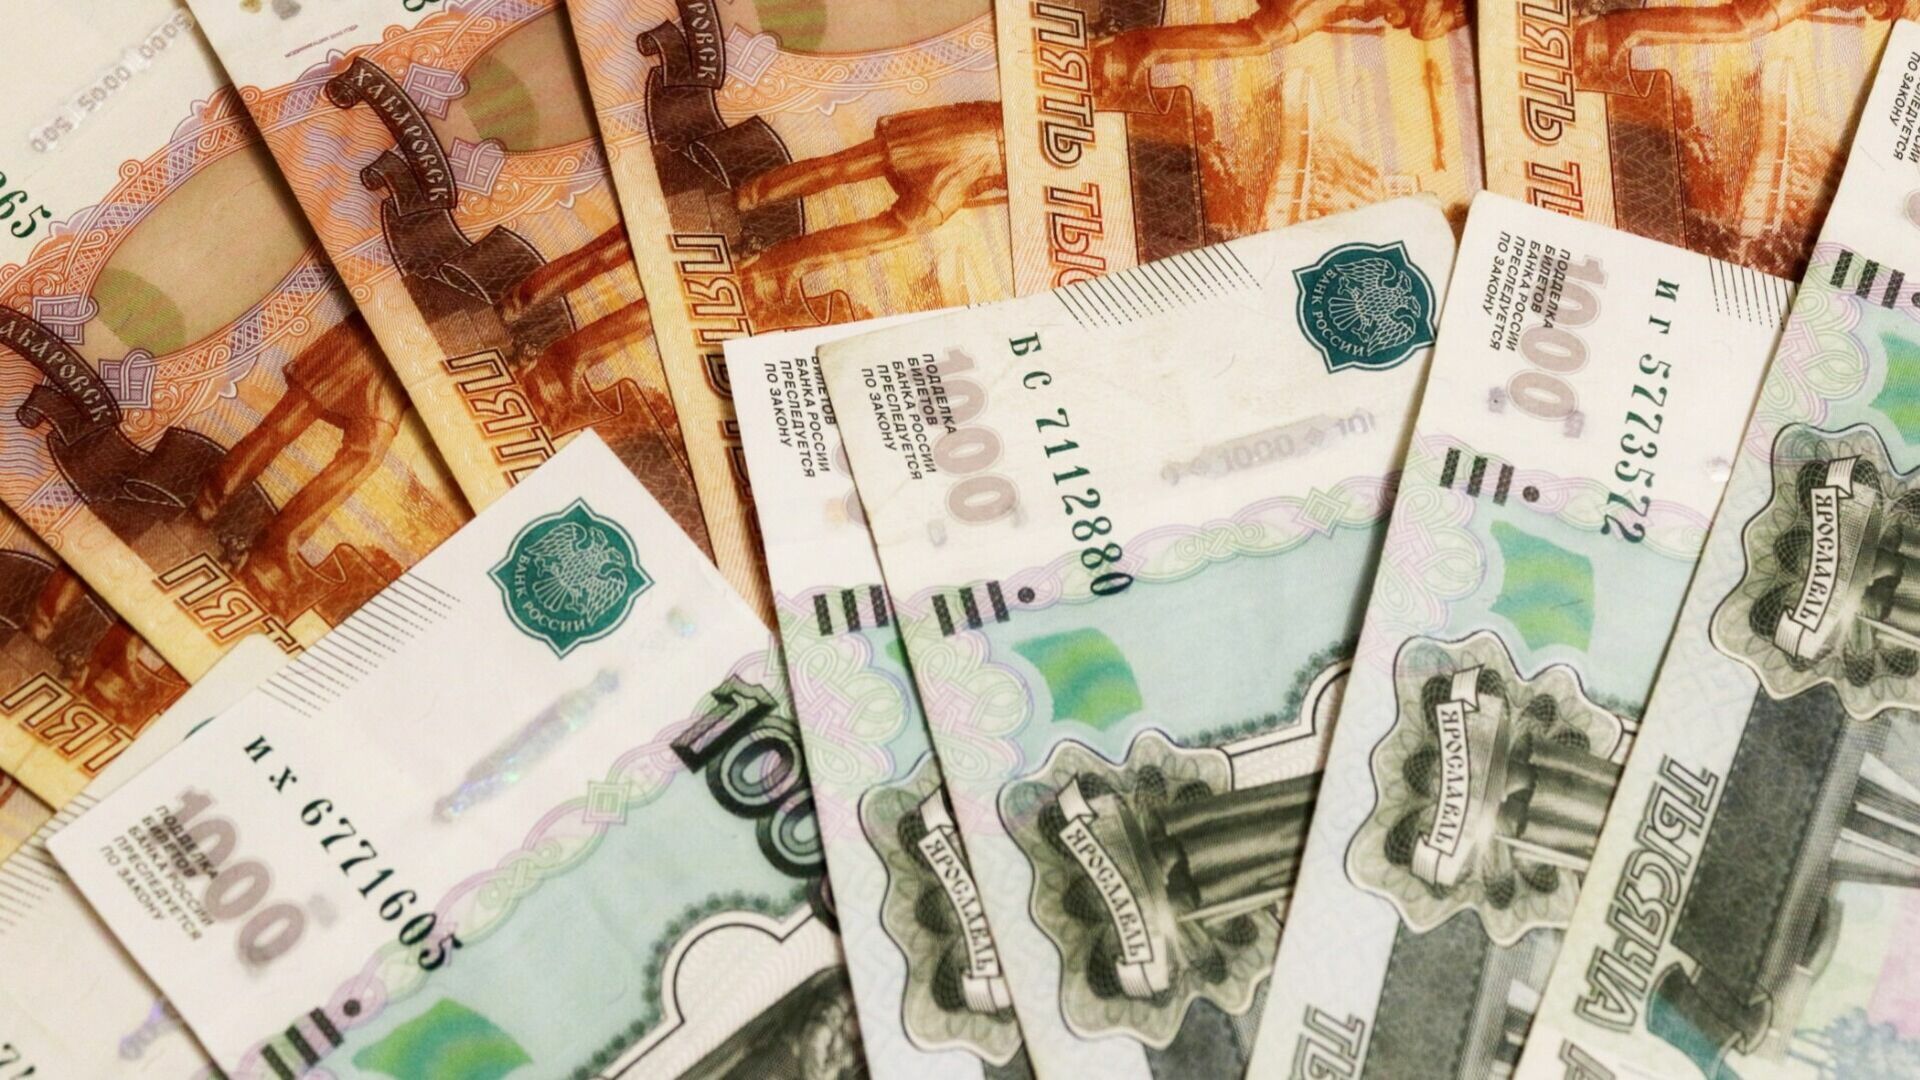 Лучшие участковые Белгорода получат денежные призы до 30 тысяч рублей